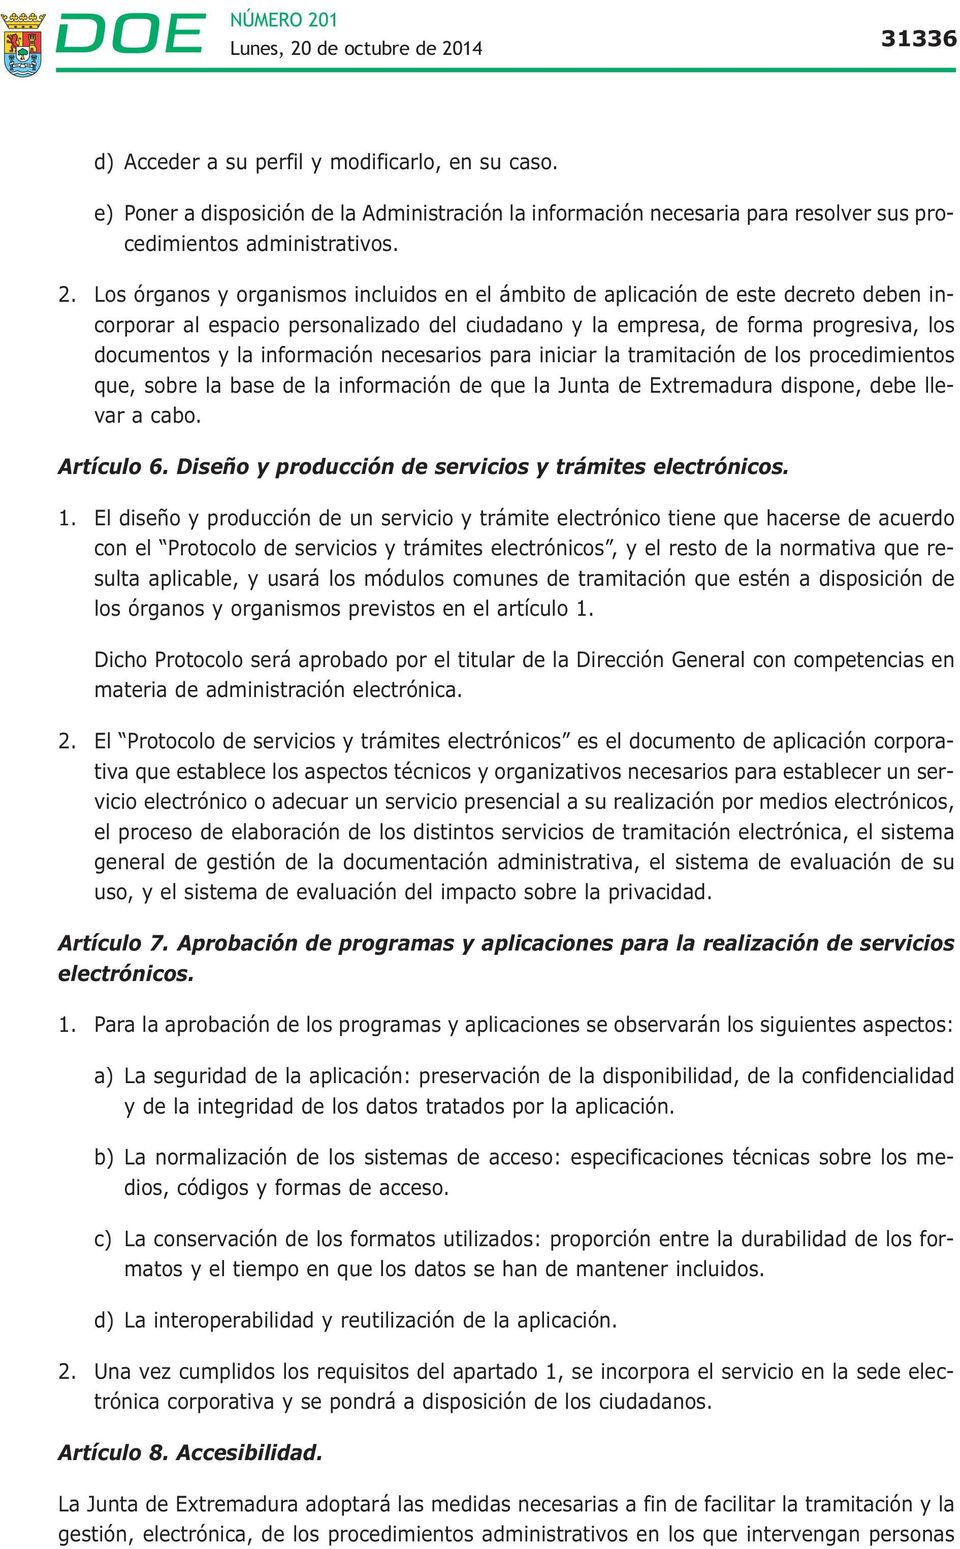 información necesarios para iniciar la tramitación de los procedimientos que, sobre la base de la información de que la Junta de Extremadura dispone, debe llevar a cabo. Artículo 6.